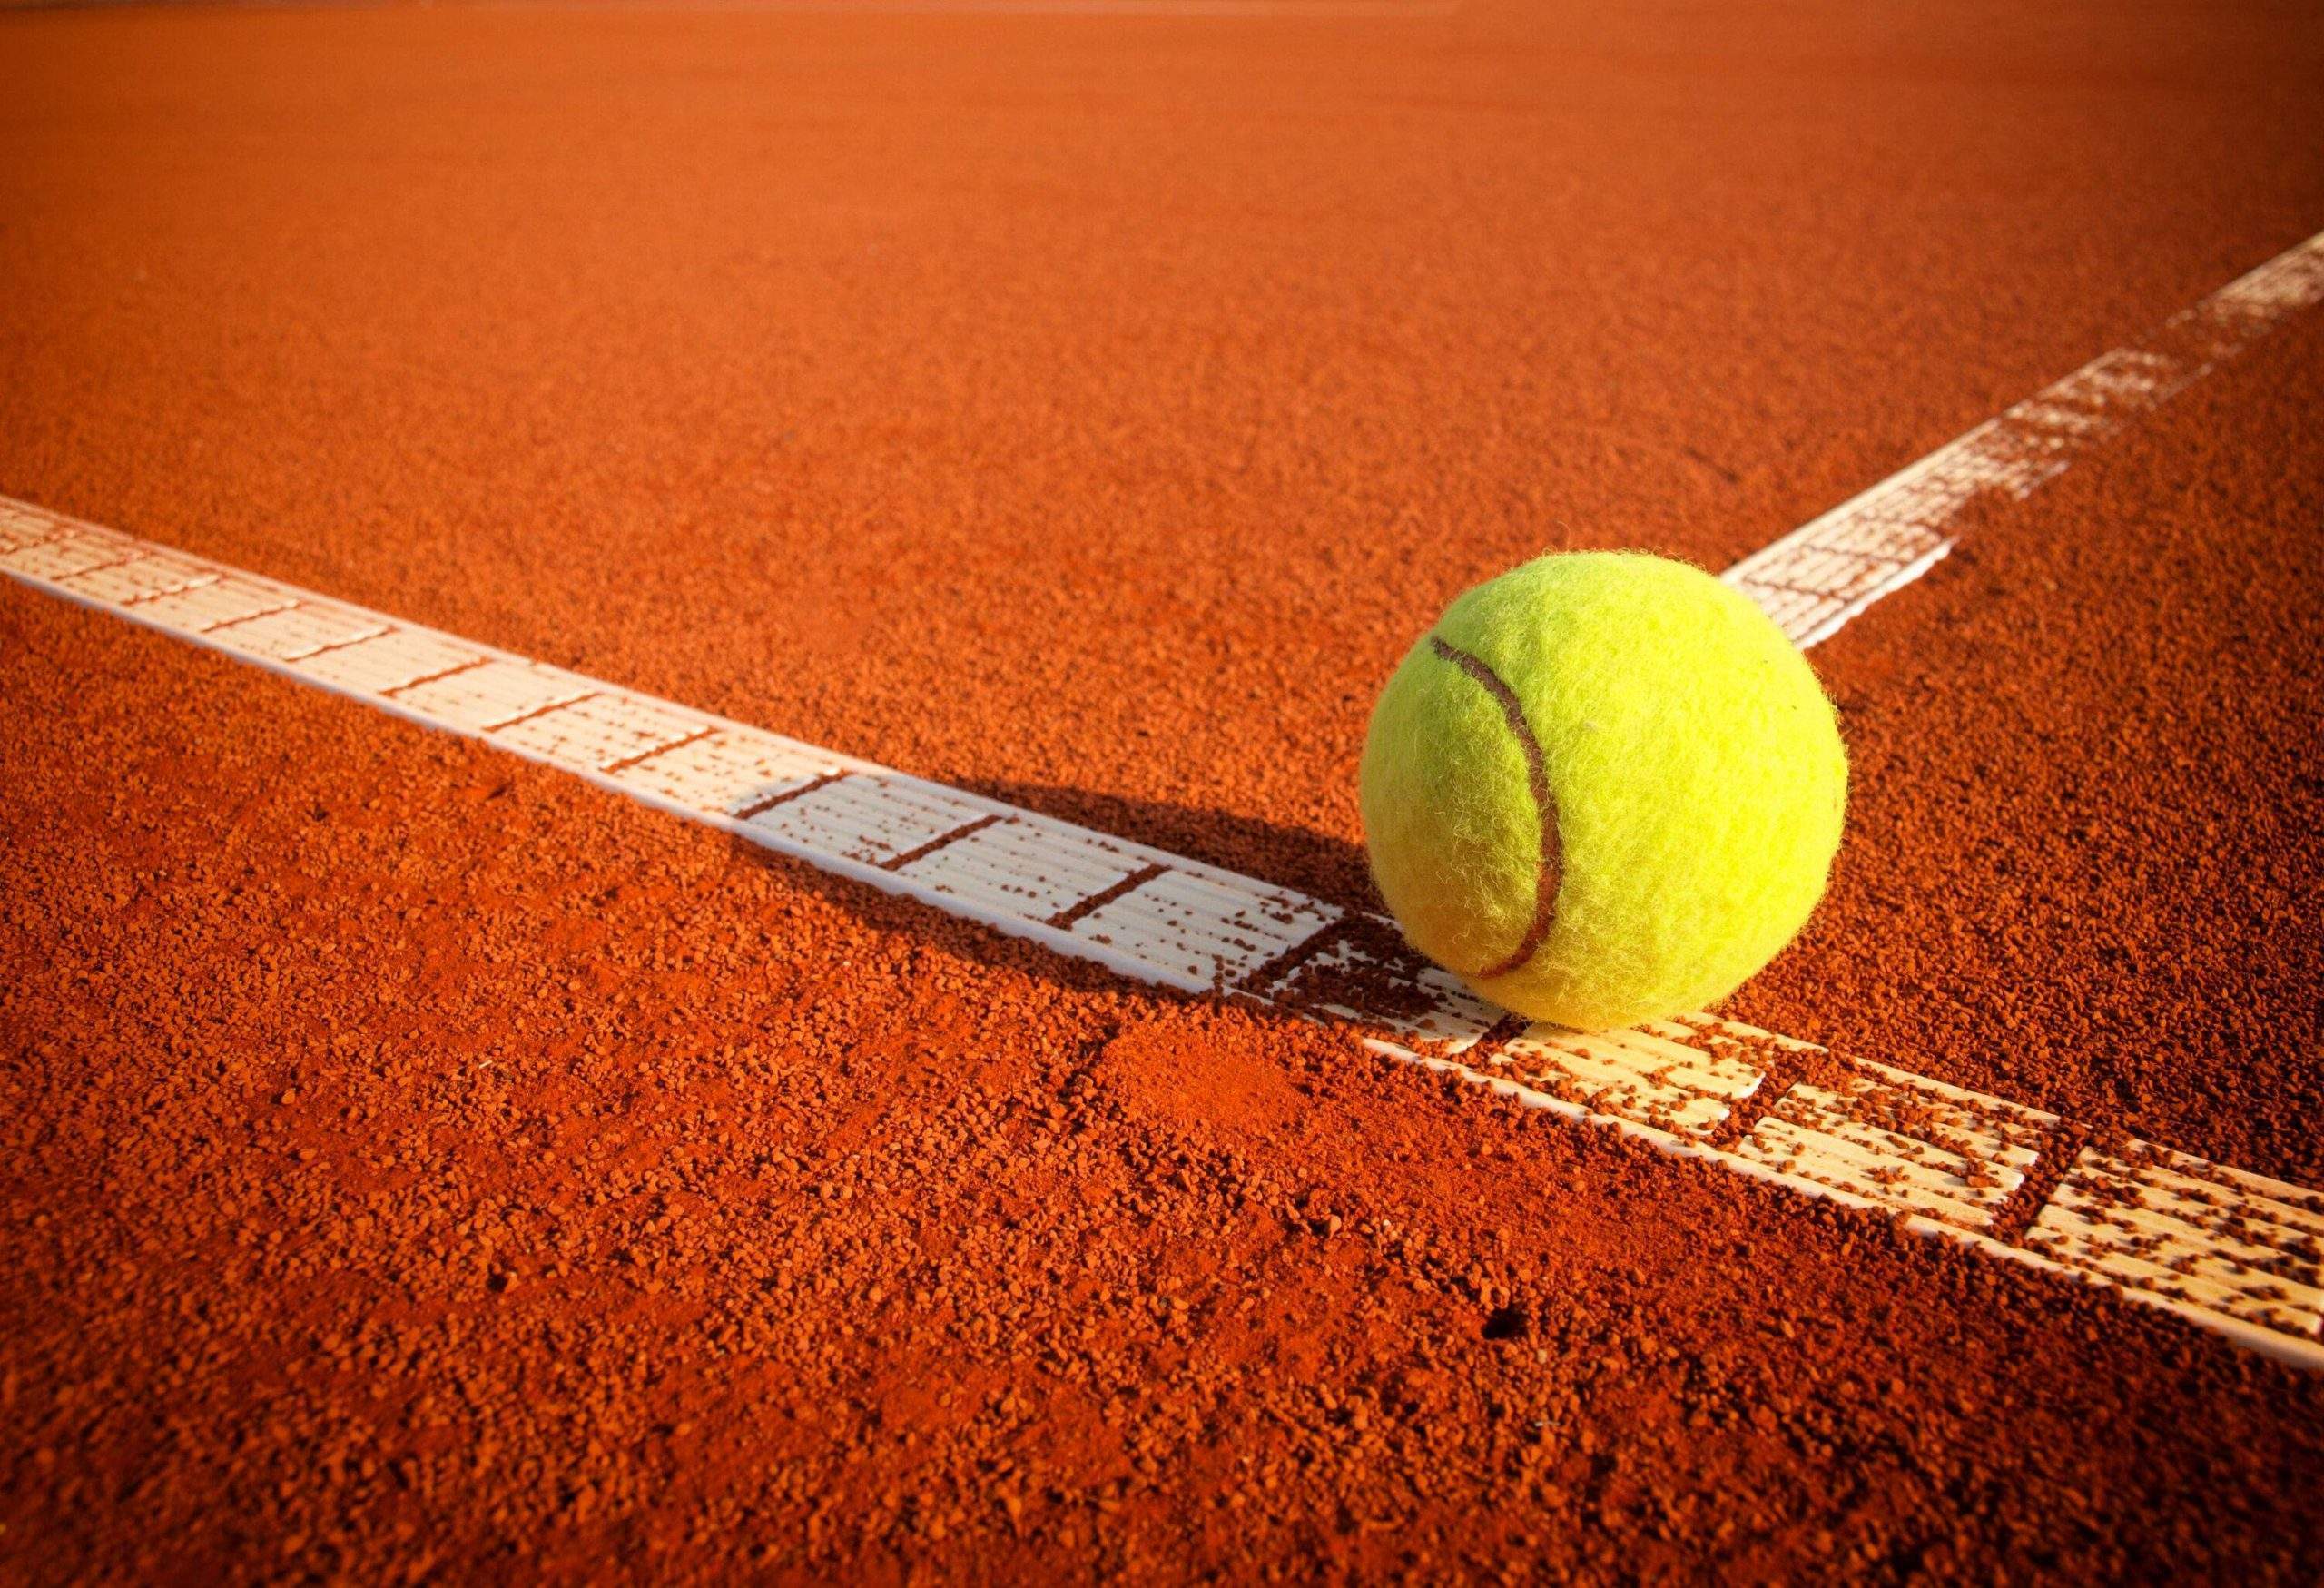 A tennis ball on a tennis clay court.